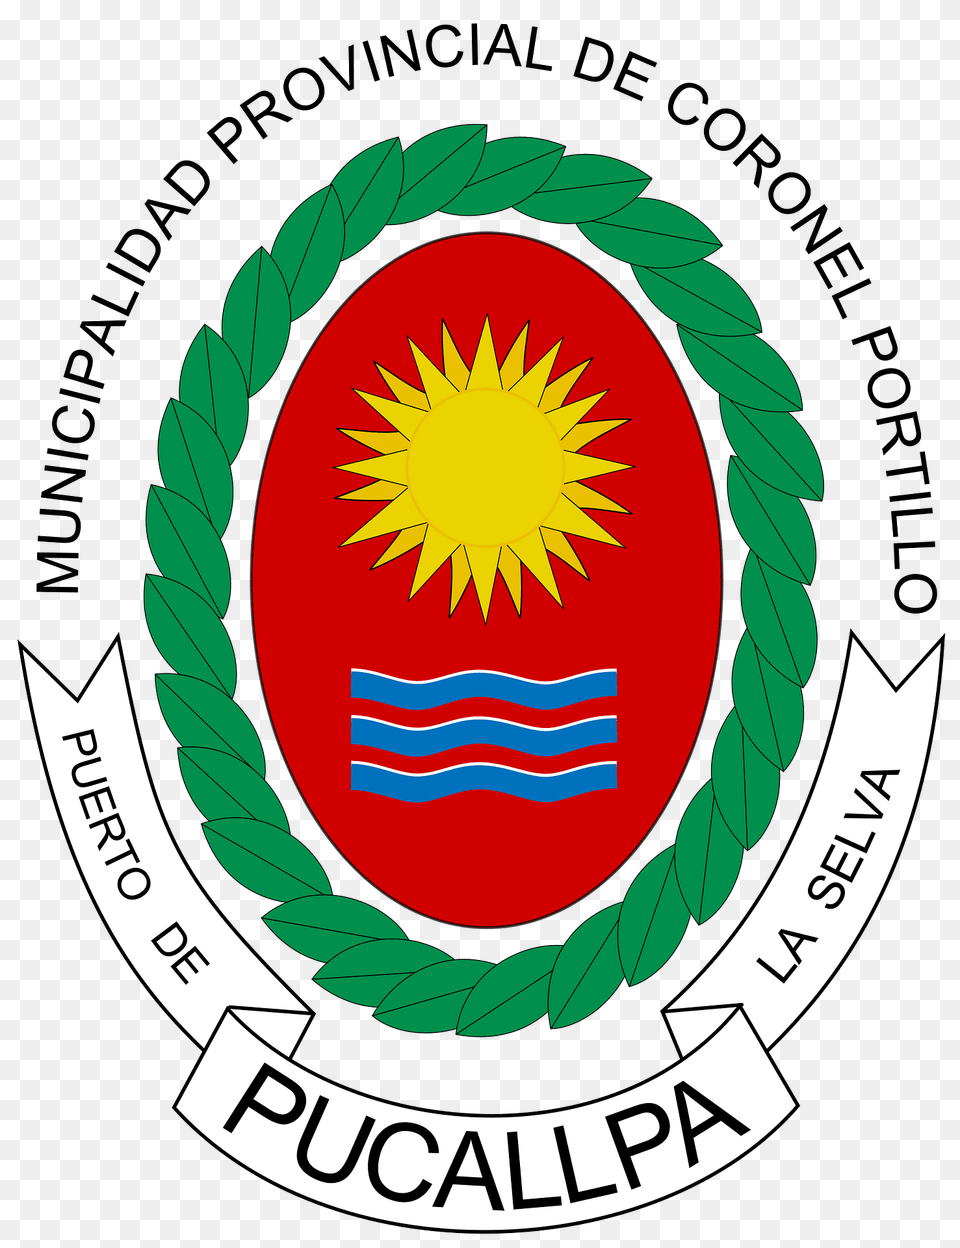 Escudo De Pucallpa Clipart, Logo, Badge, Symbol, Emblem Free Png Download